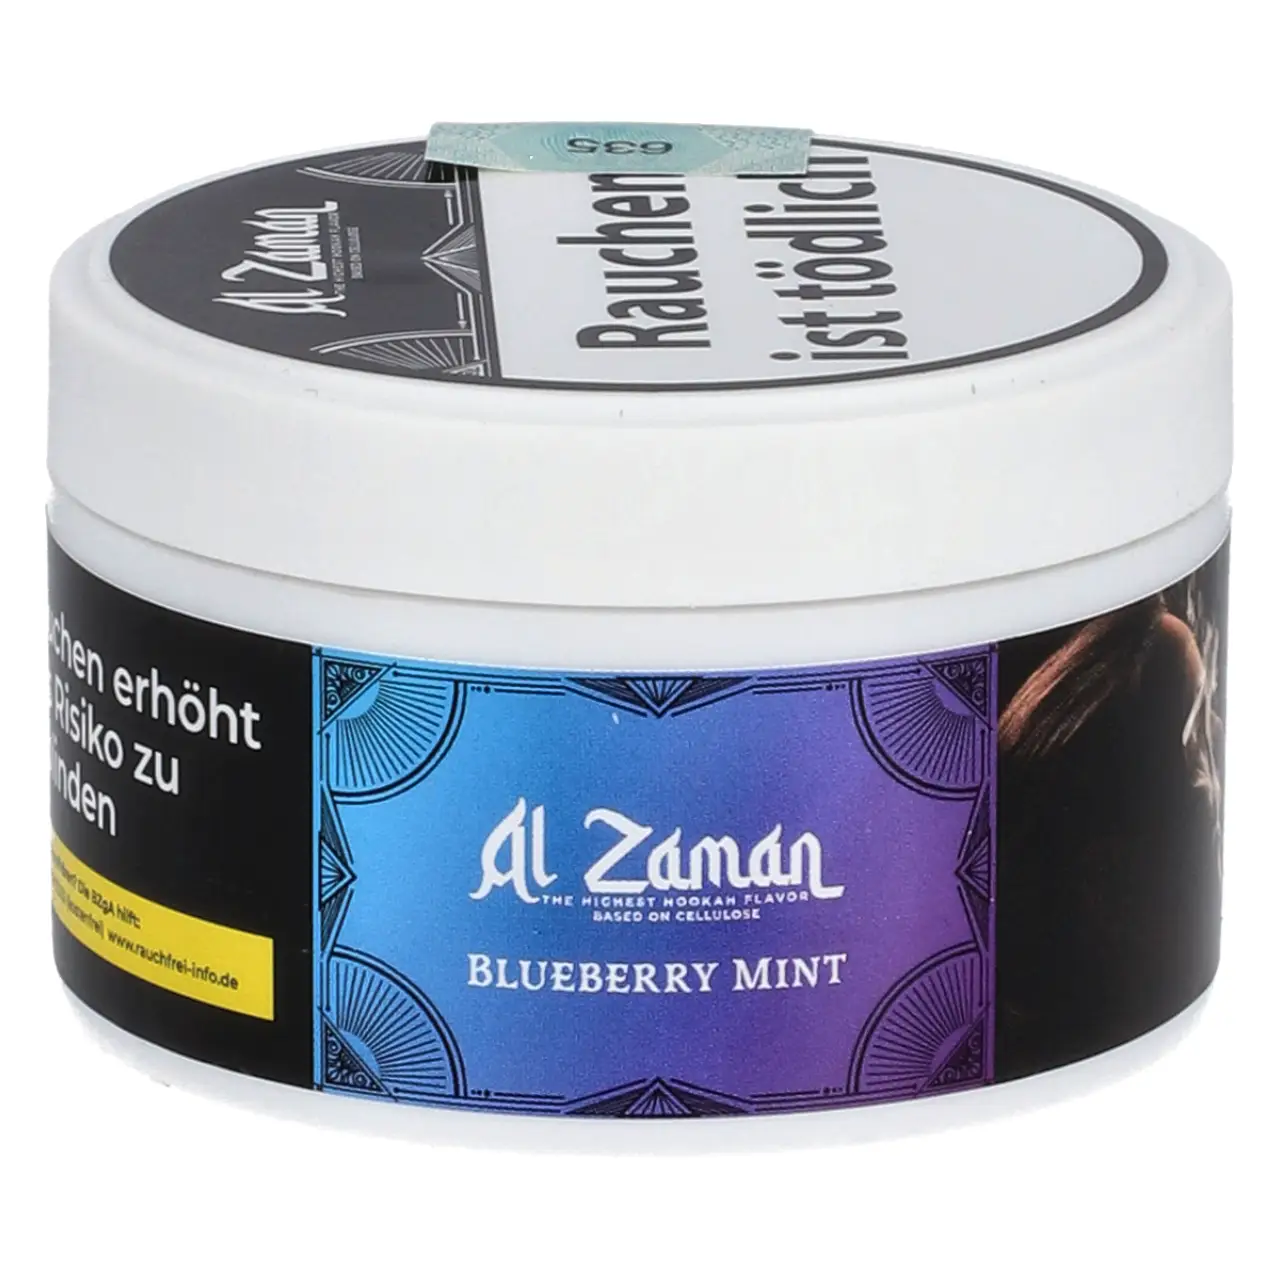 Al Zaman nikotinfreier Shisha Tabak Blueberry Mint - Blaubeere Minze - 25g